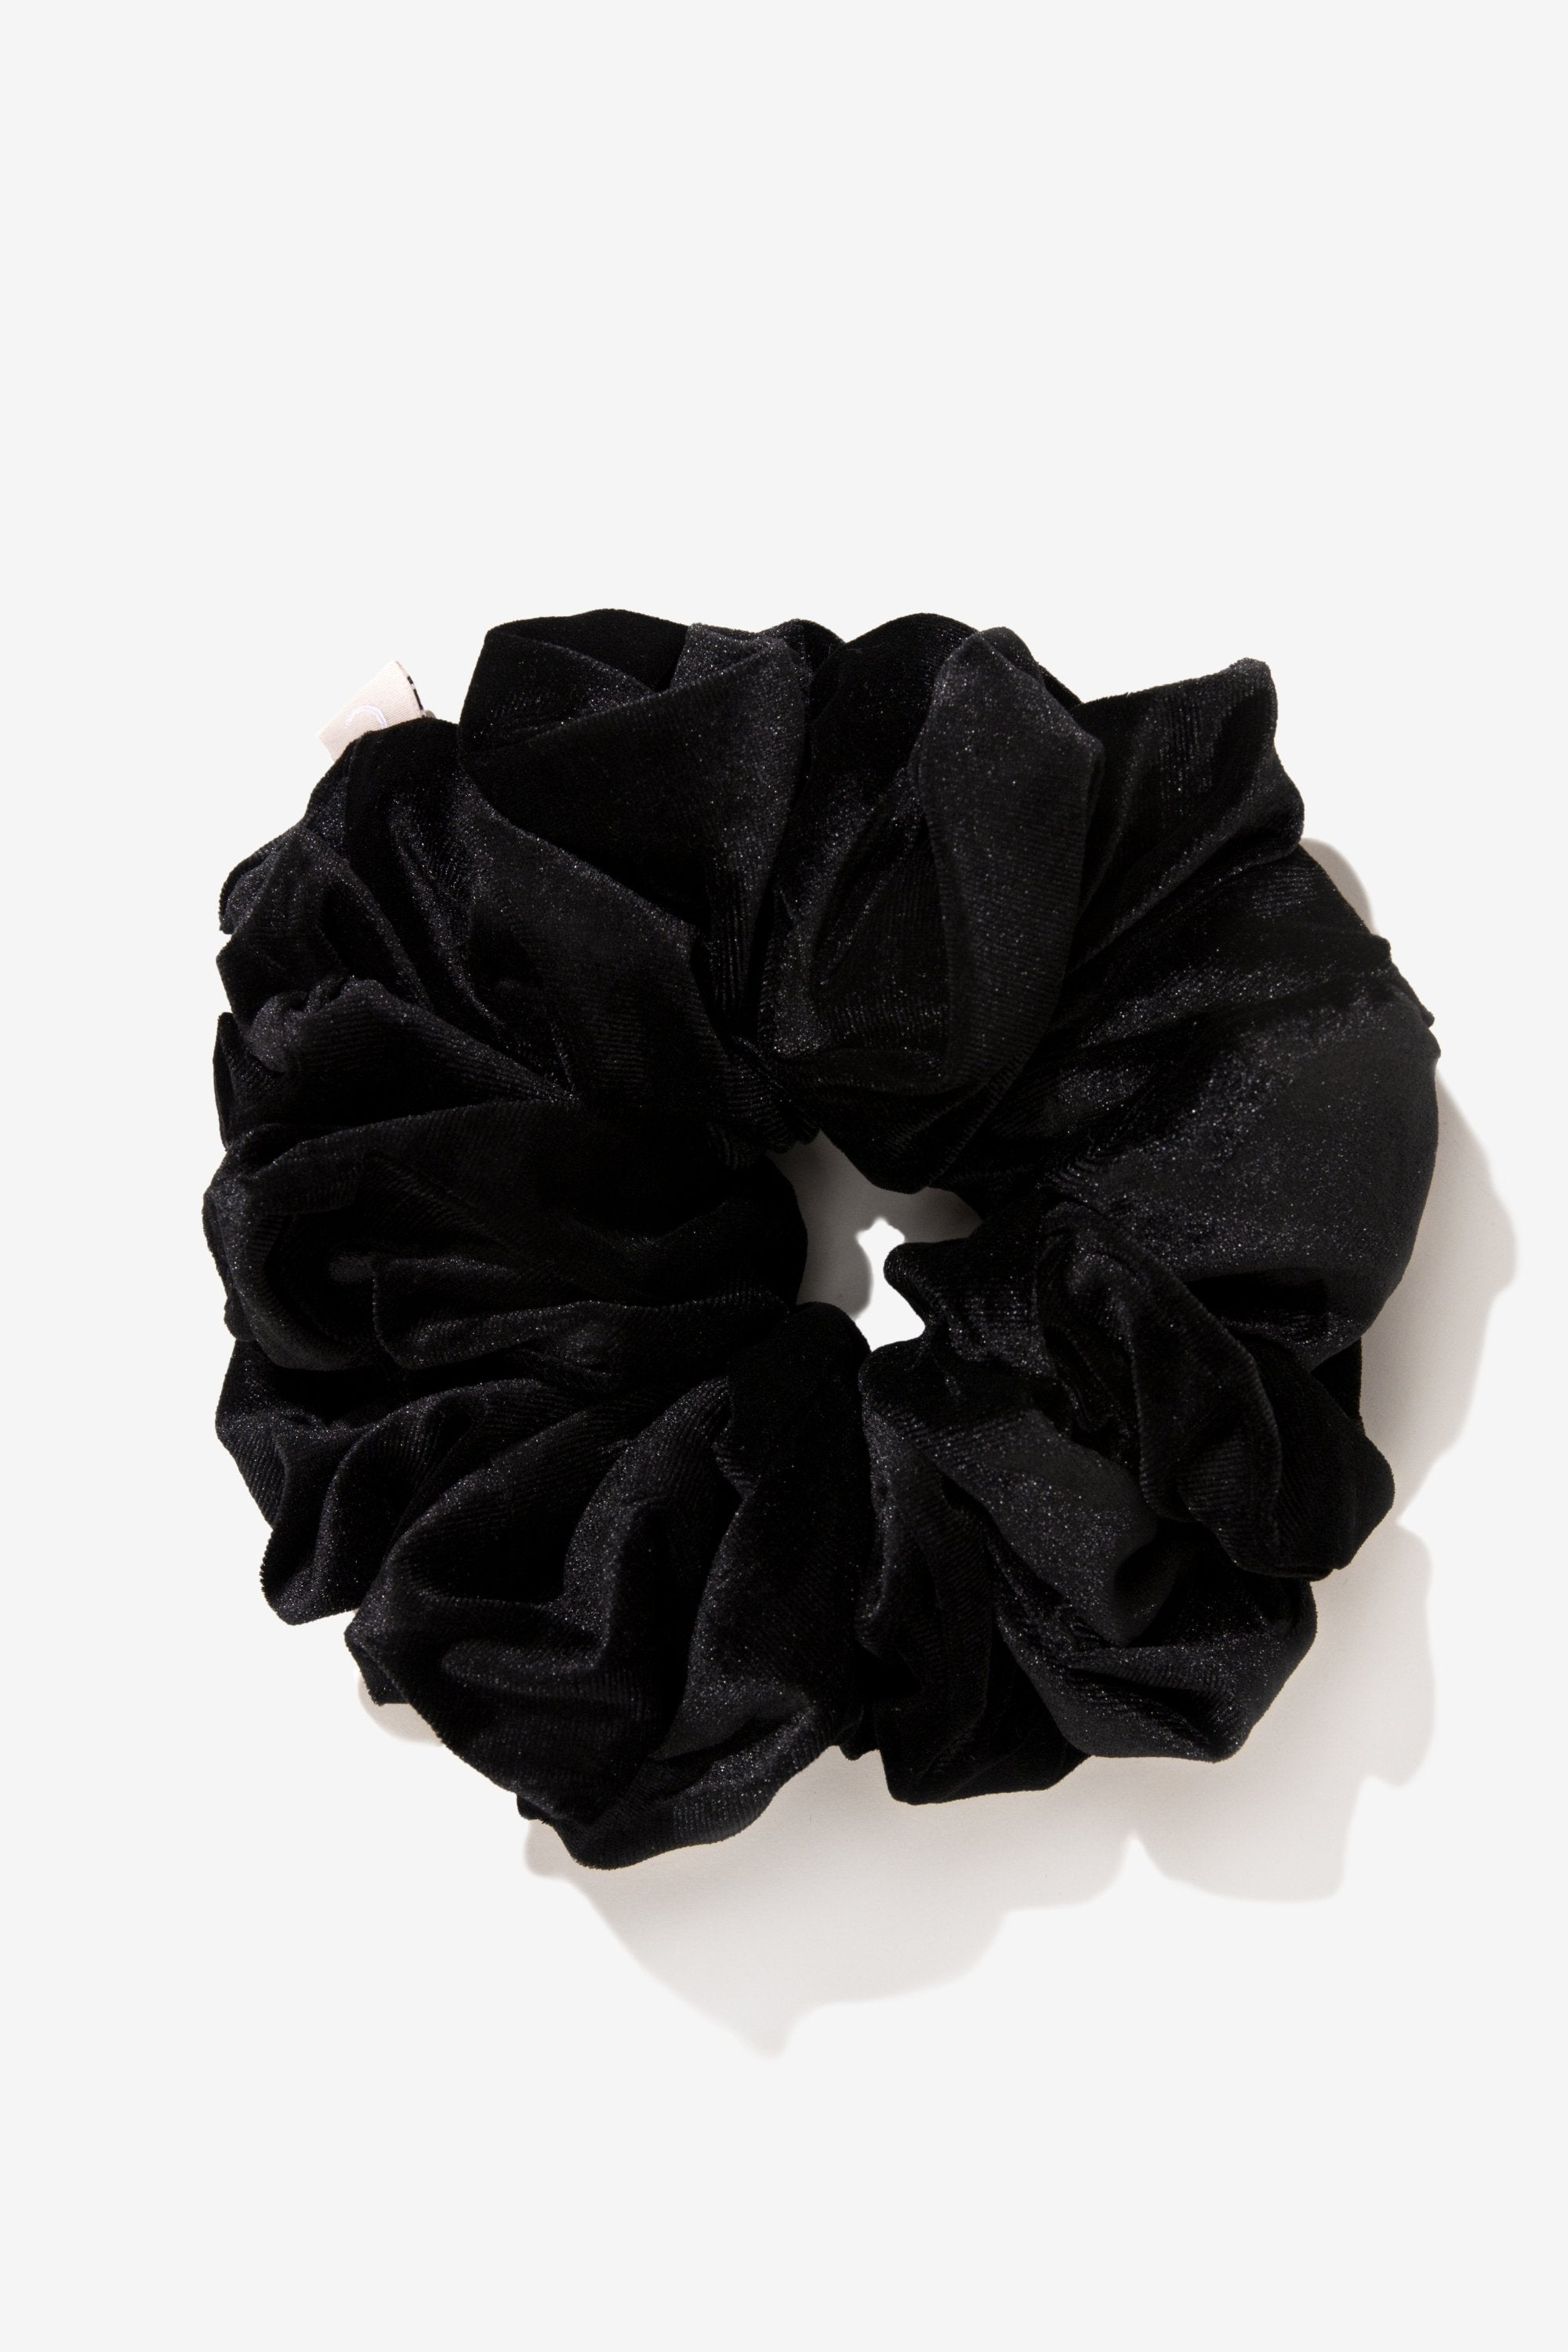 Velvet Volume Scrunchie - Black Veiled Collection Large 